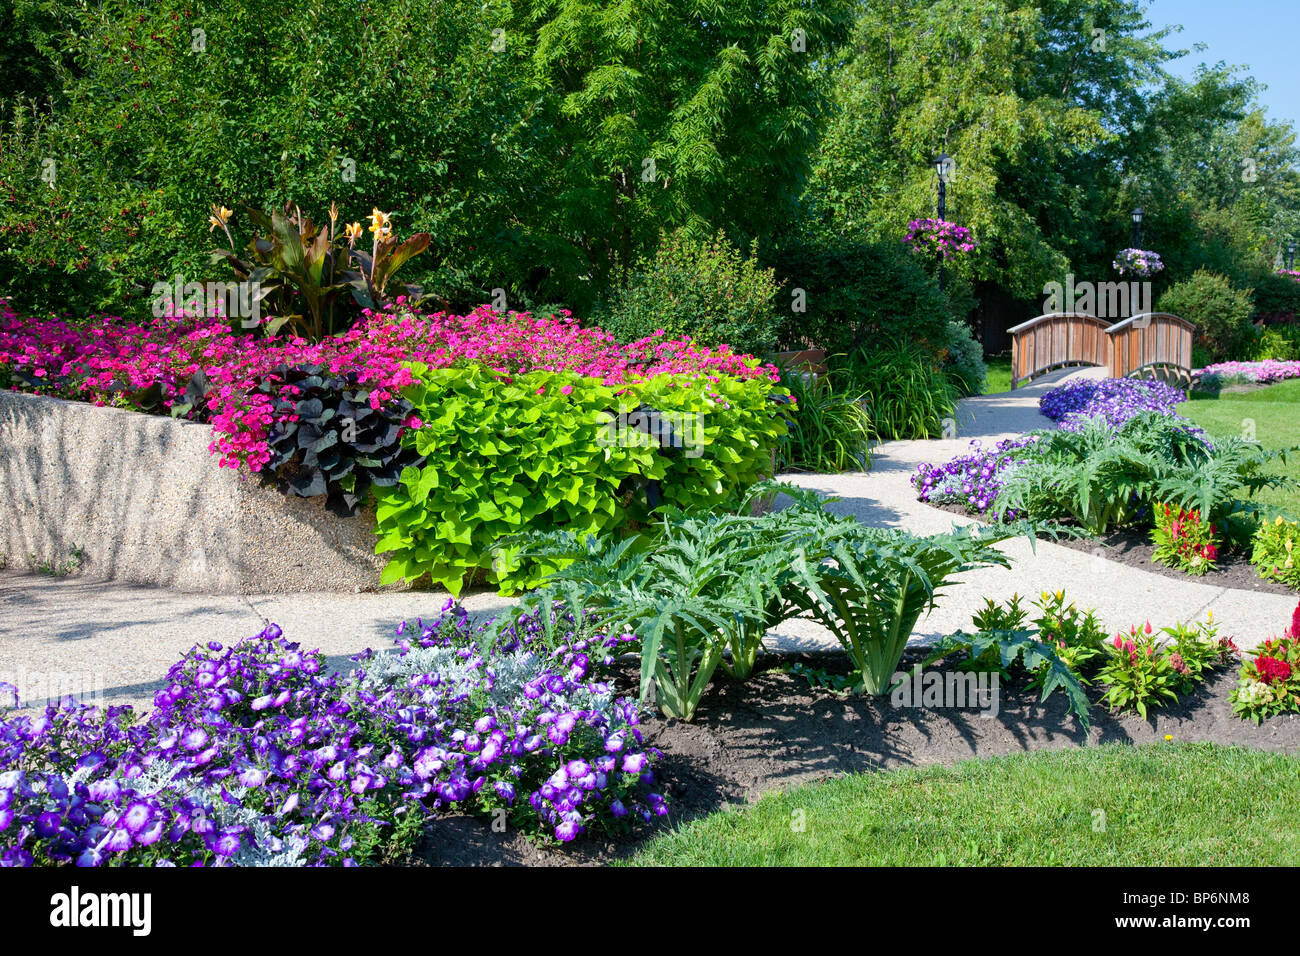 The Parkview gardens on Grandeur Ave. in Winkler, Manitoba, Canada. Stock Photo